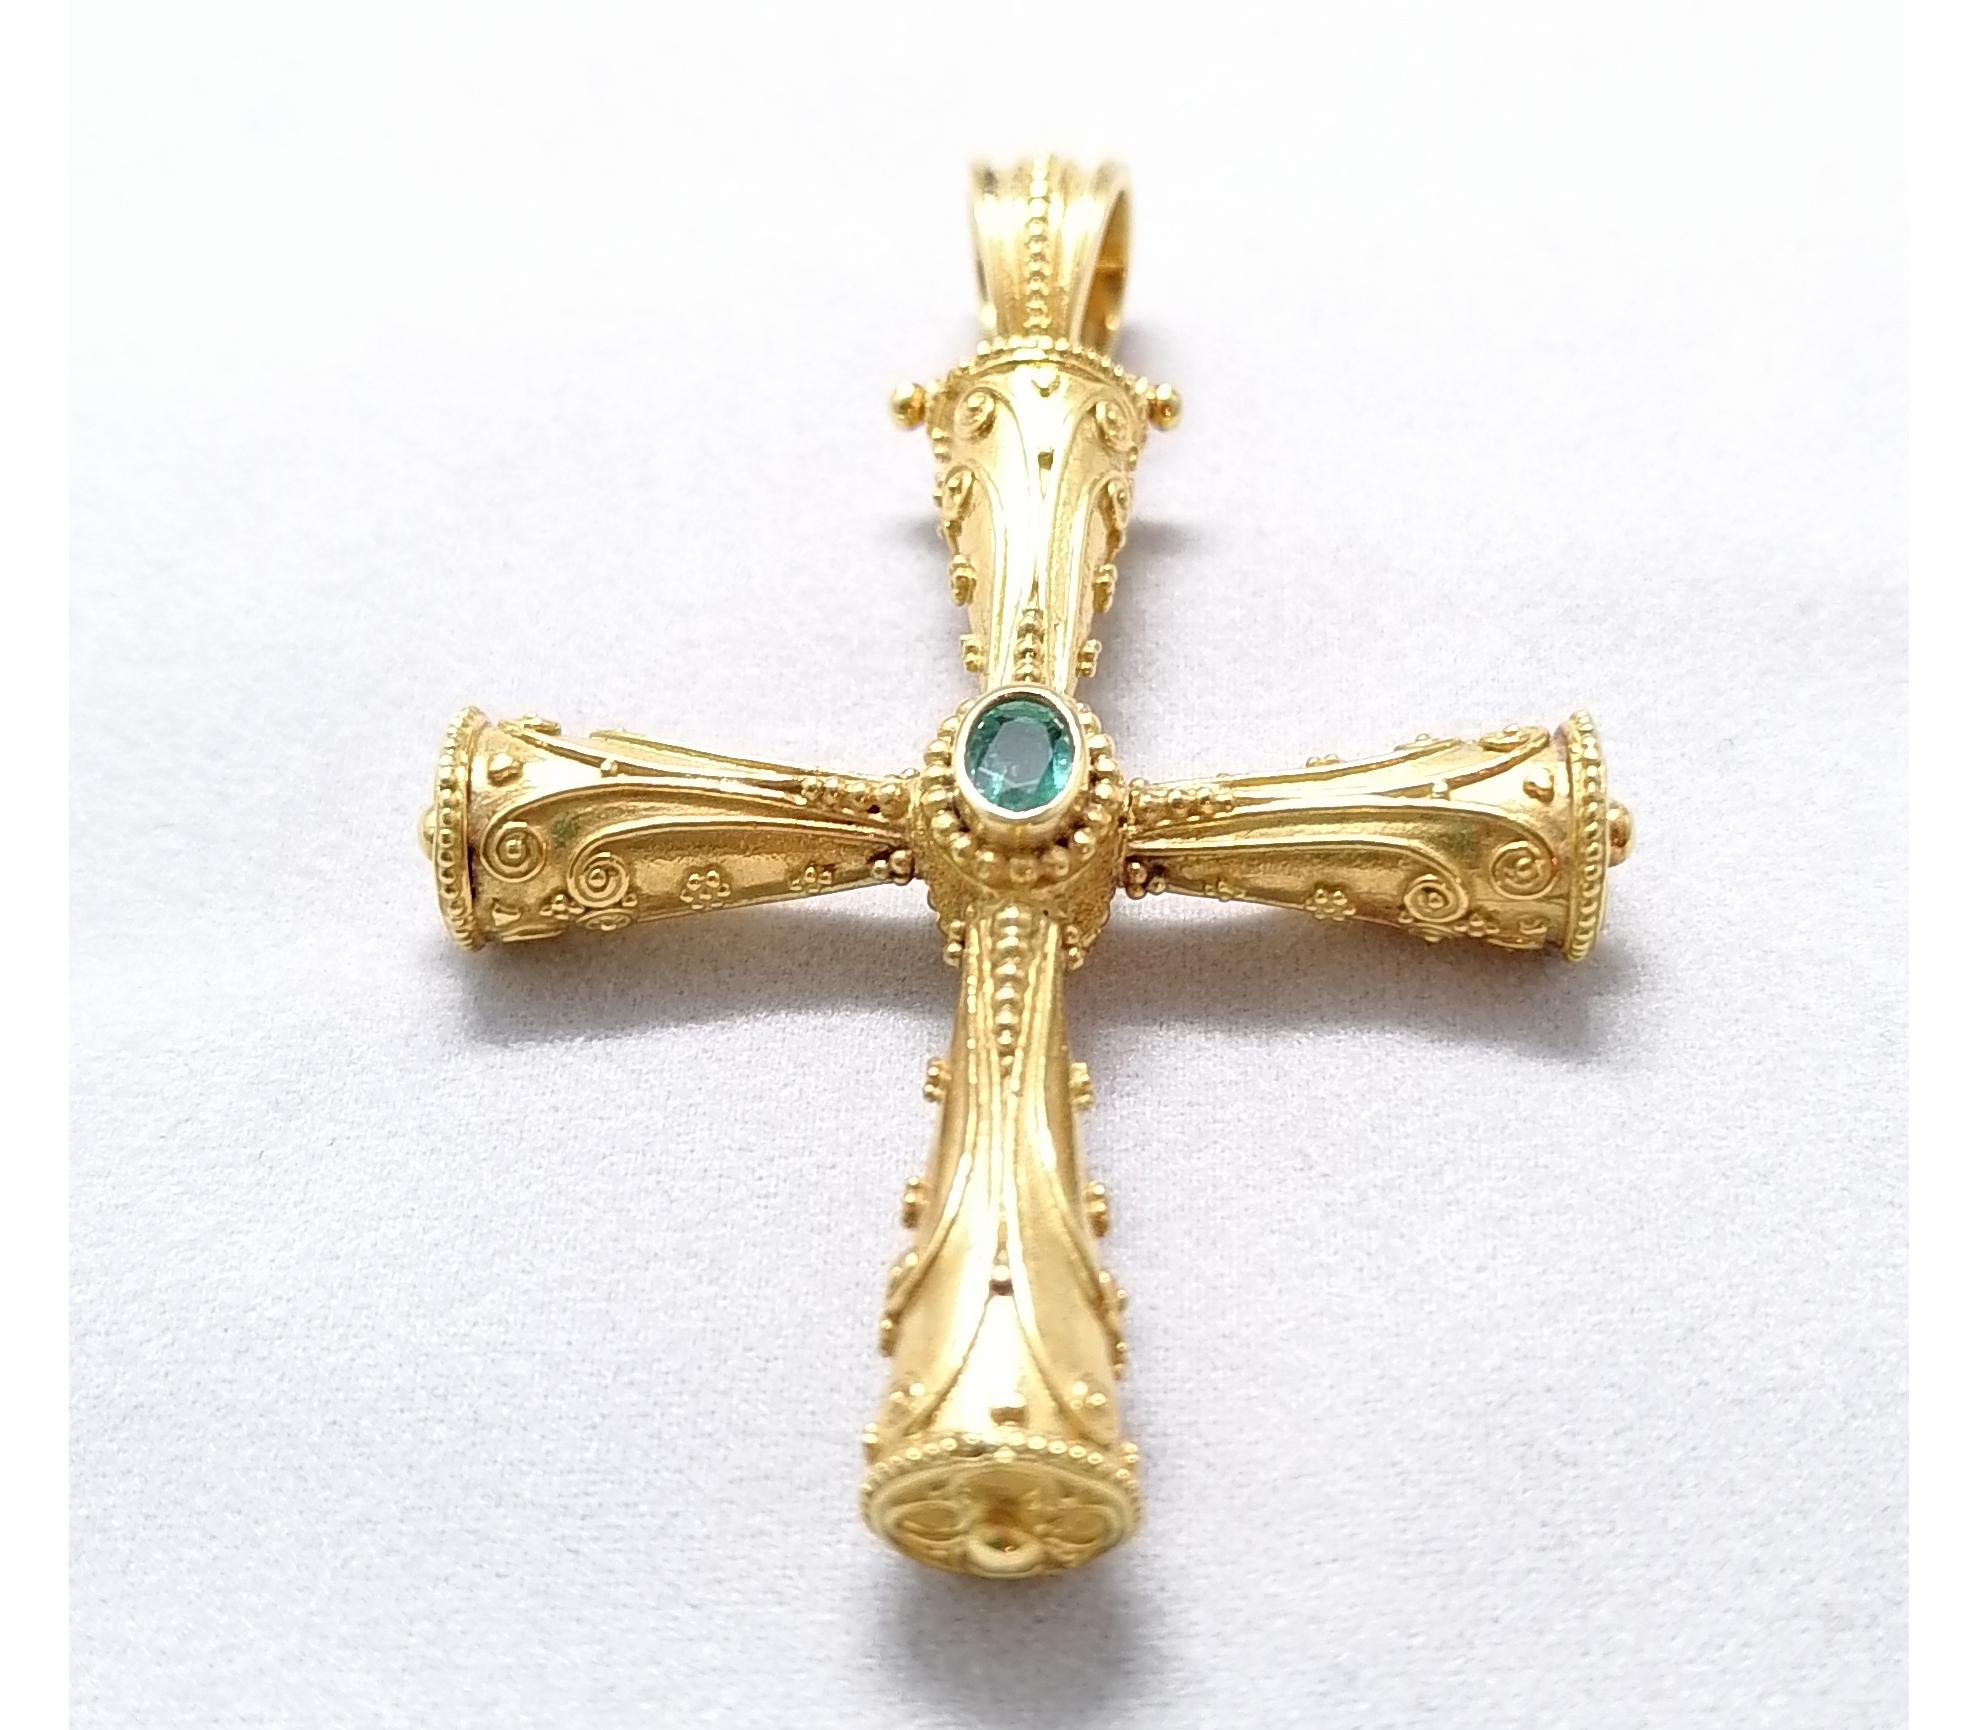 Ce pendentif en forme de croix géométrique réversible en or jaune 18 carats de S.Georgios est magnifiquement réalisé à la main avec un travail de granulation de style byzantin décoré au microscope et fini avec un fond en velours unique. Ce superbe